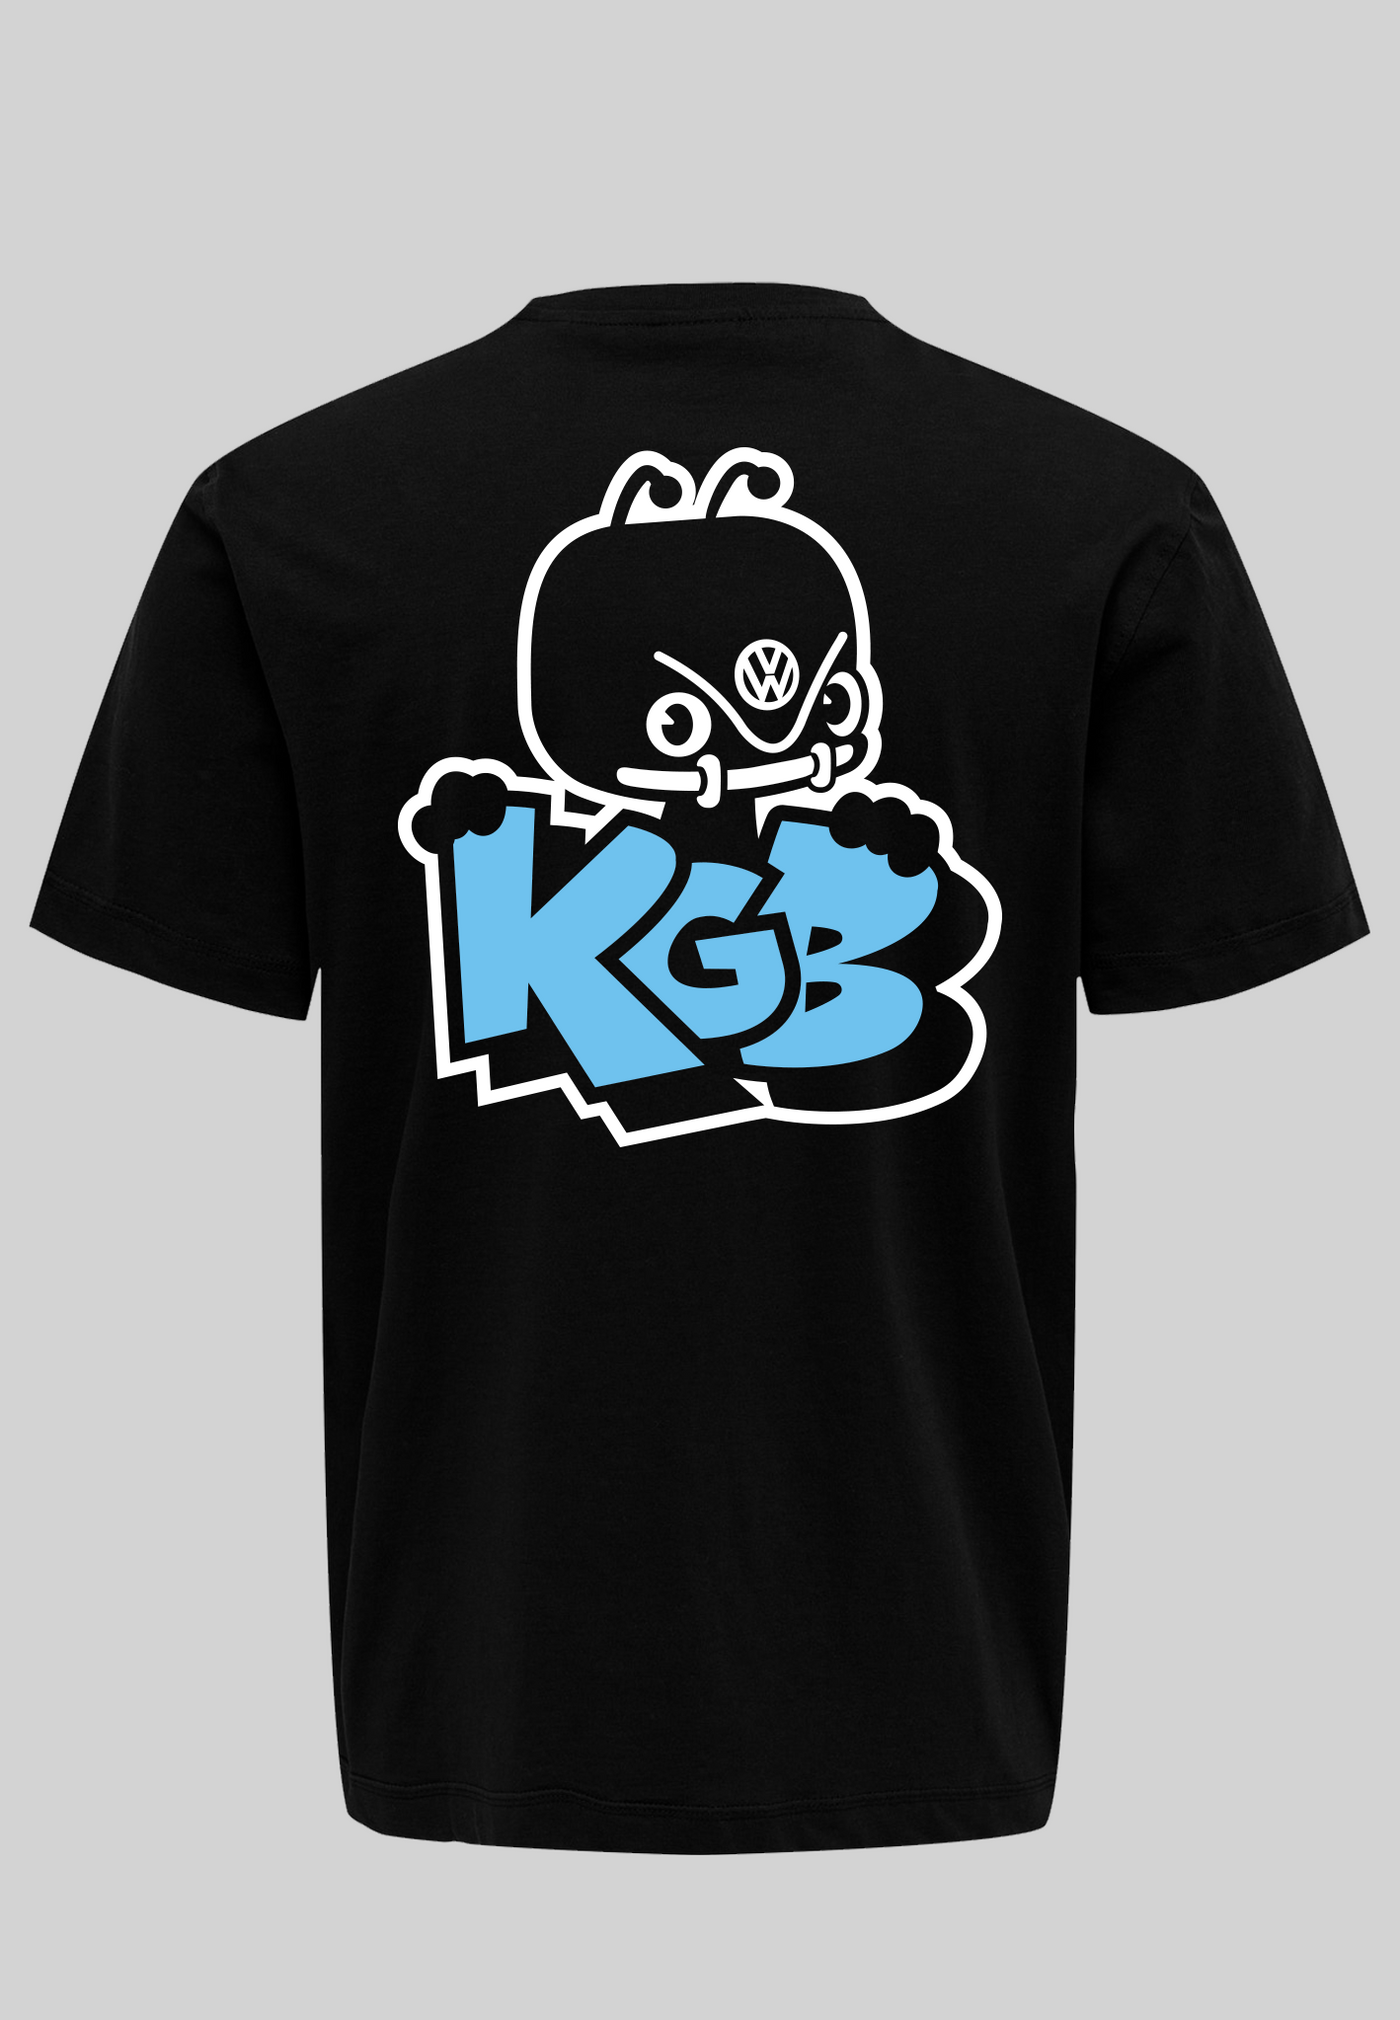 KGB T-shirt - blå logo (med ryg logo)